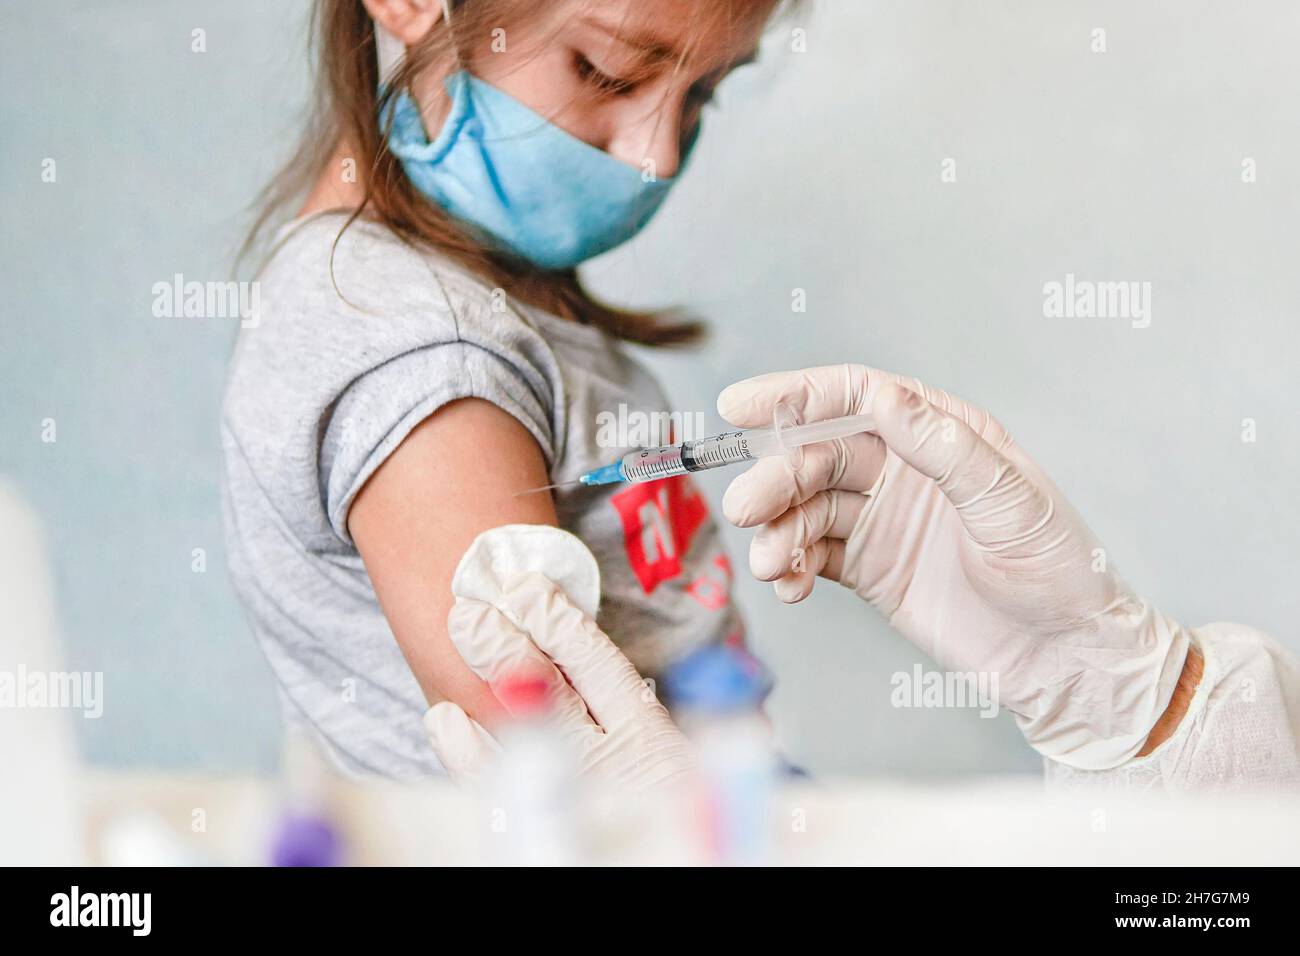 Un médecin injecte bébé de vaccination d'enfant.Le médecin traite l'épaule de la jeune fille avec de l'alcool pour la vaccination, désinfection pour la vaccination, immu Banque D'Images